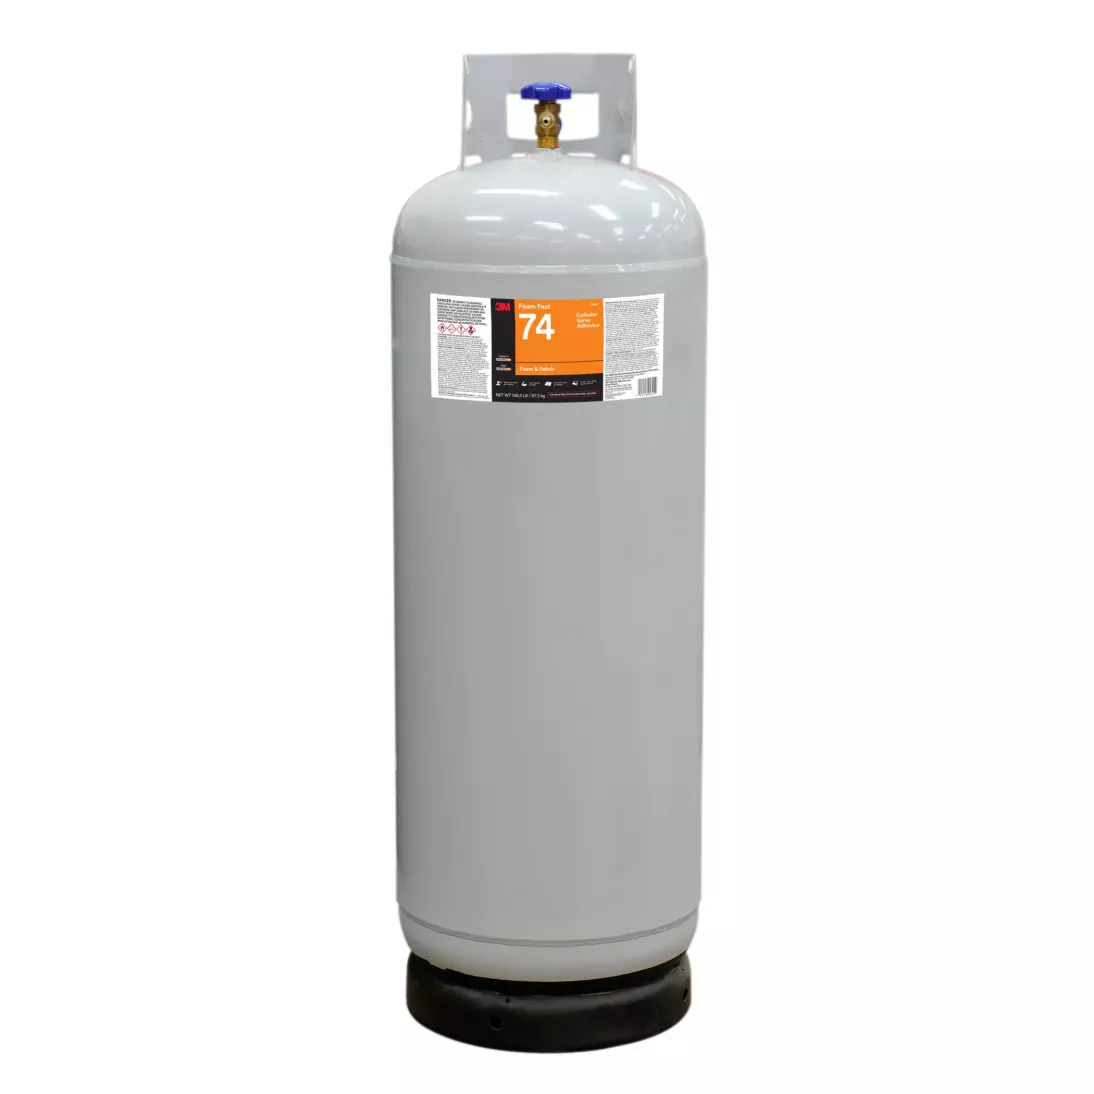 3M™ Foam Fast 74 Cylinder Spray Adhesive, Clear, Intermediate Cylinder
(Net Wt 148.5 lb)